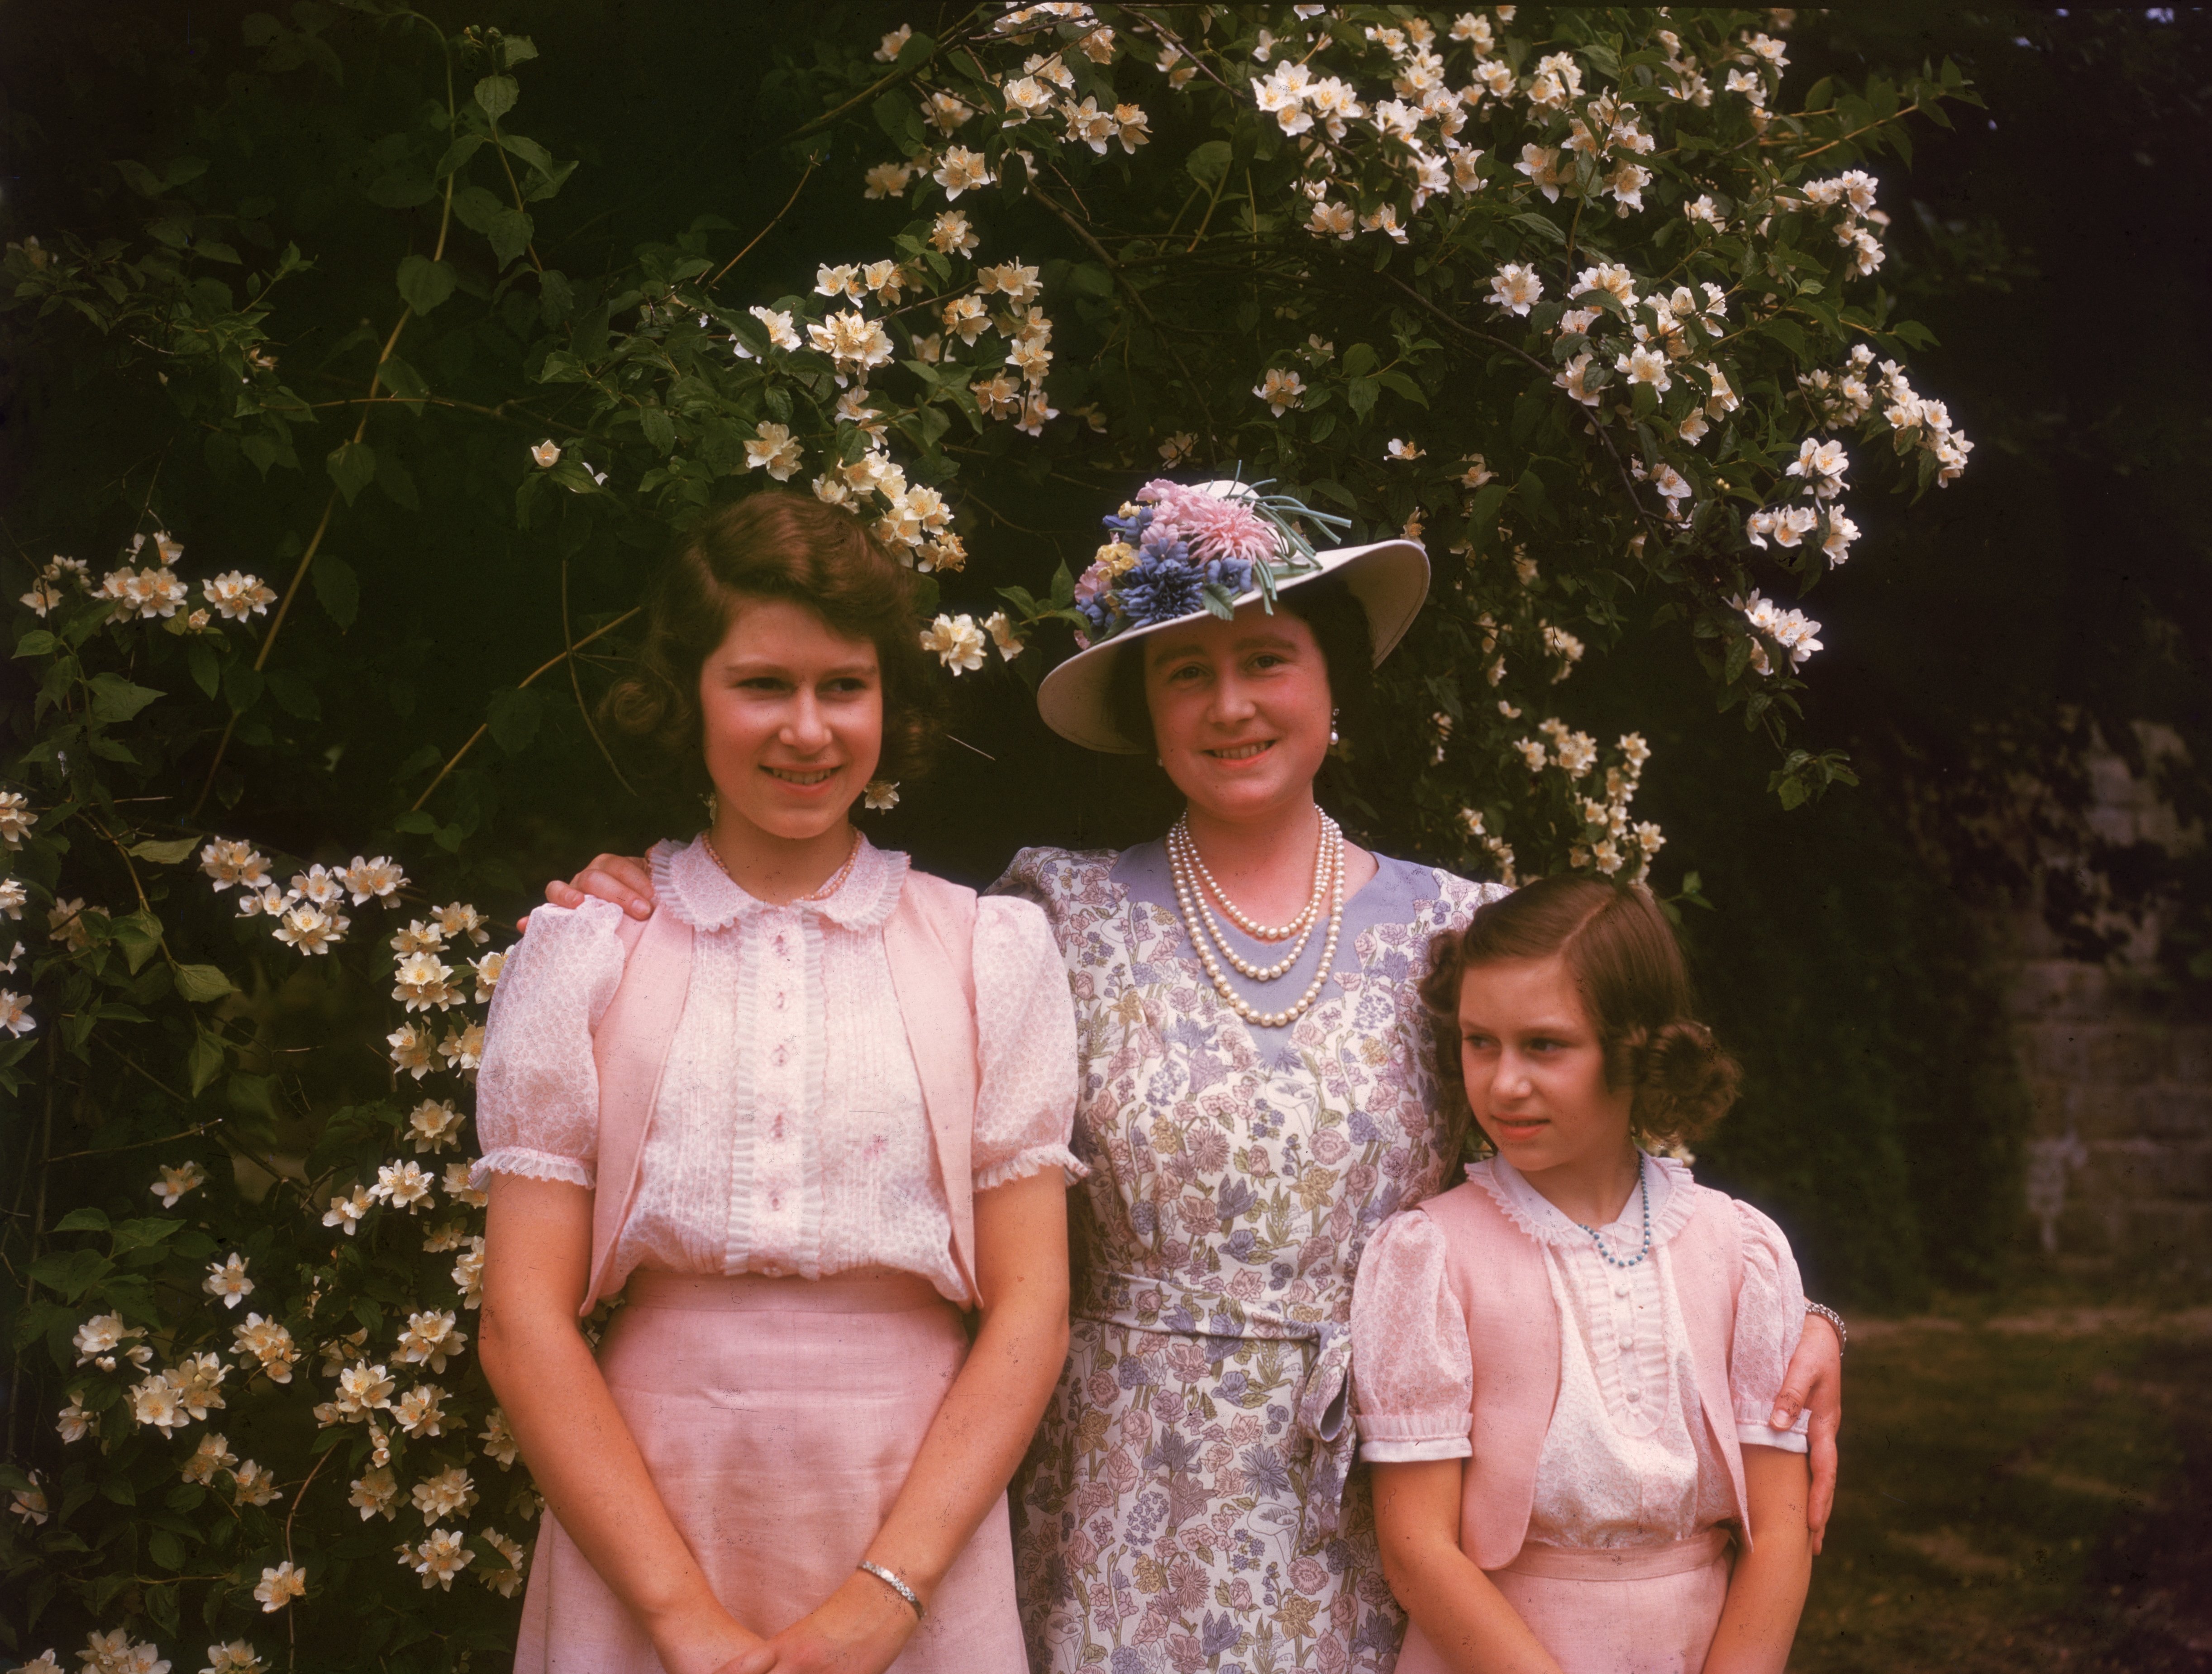 La reina Elizabeth con sus hijas, la princesa Elizabeth y la princesa Margaret, en los terrenos del castillo de Windsor, Berkshire, el 8 de julio de 1941. | Foto: Getty Images